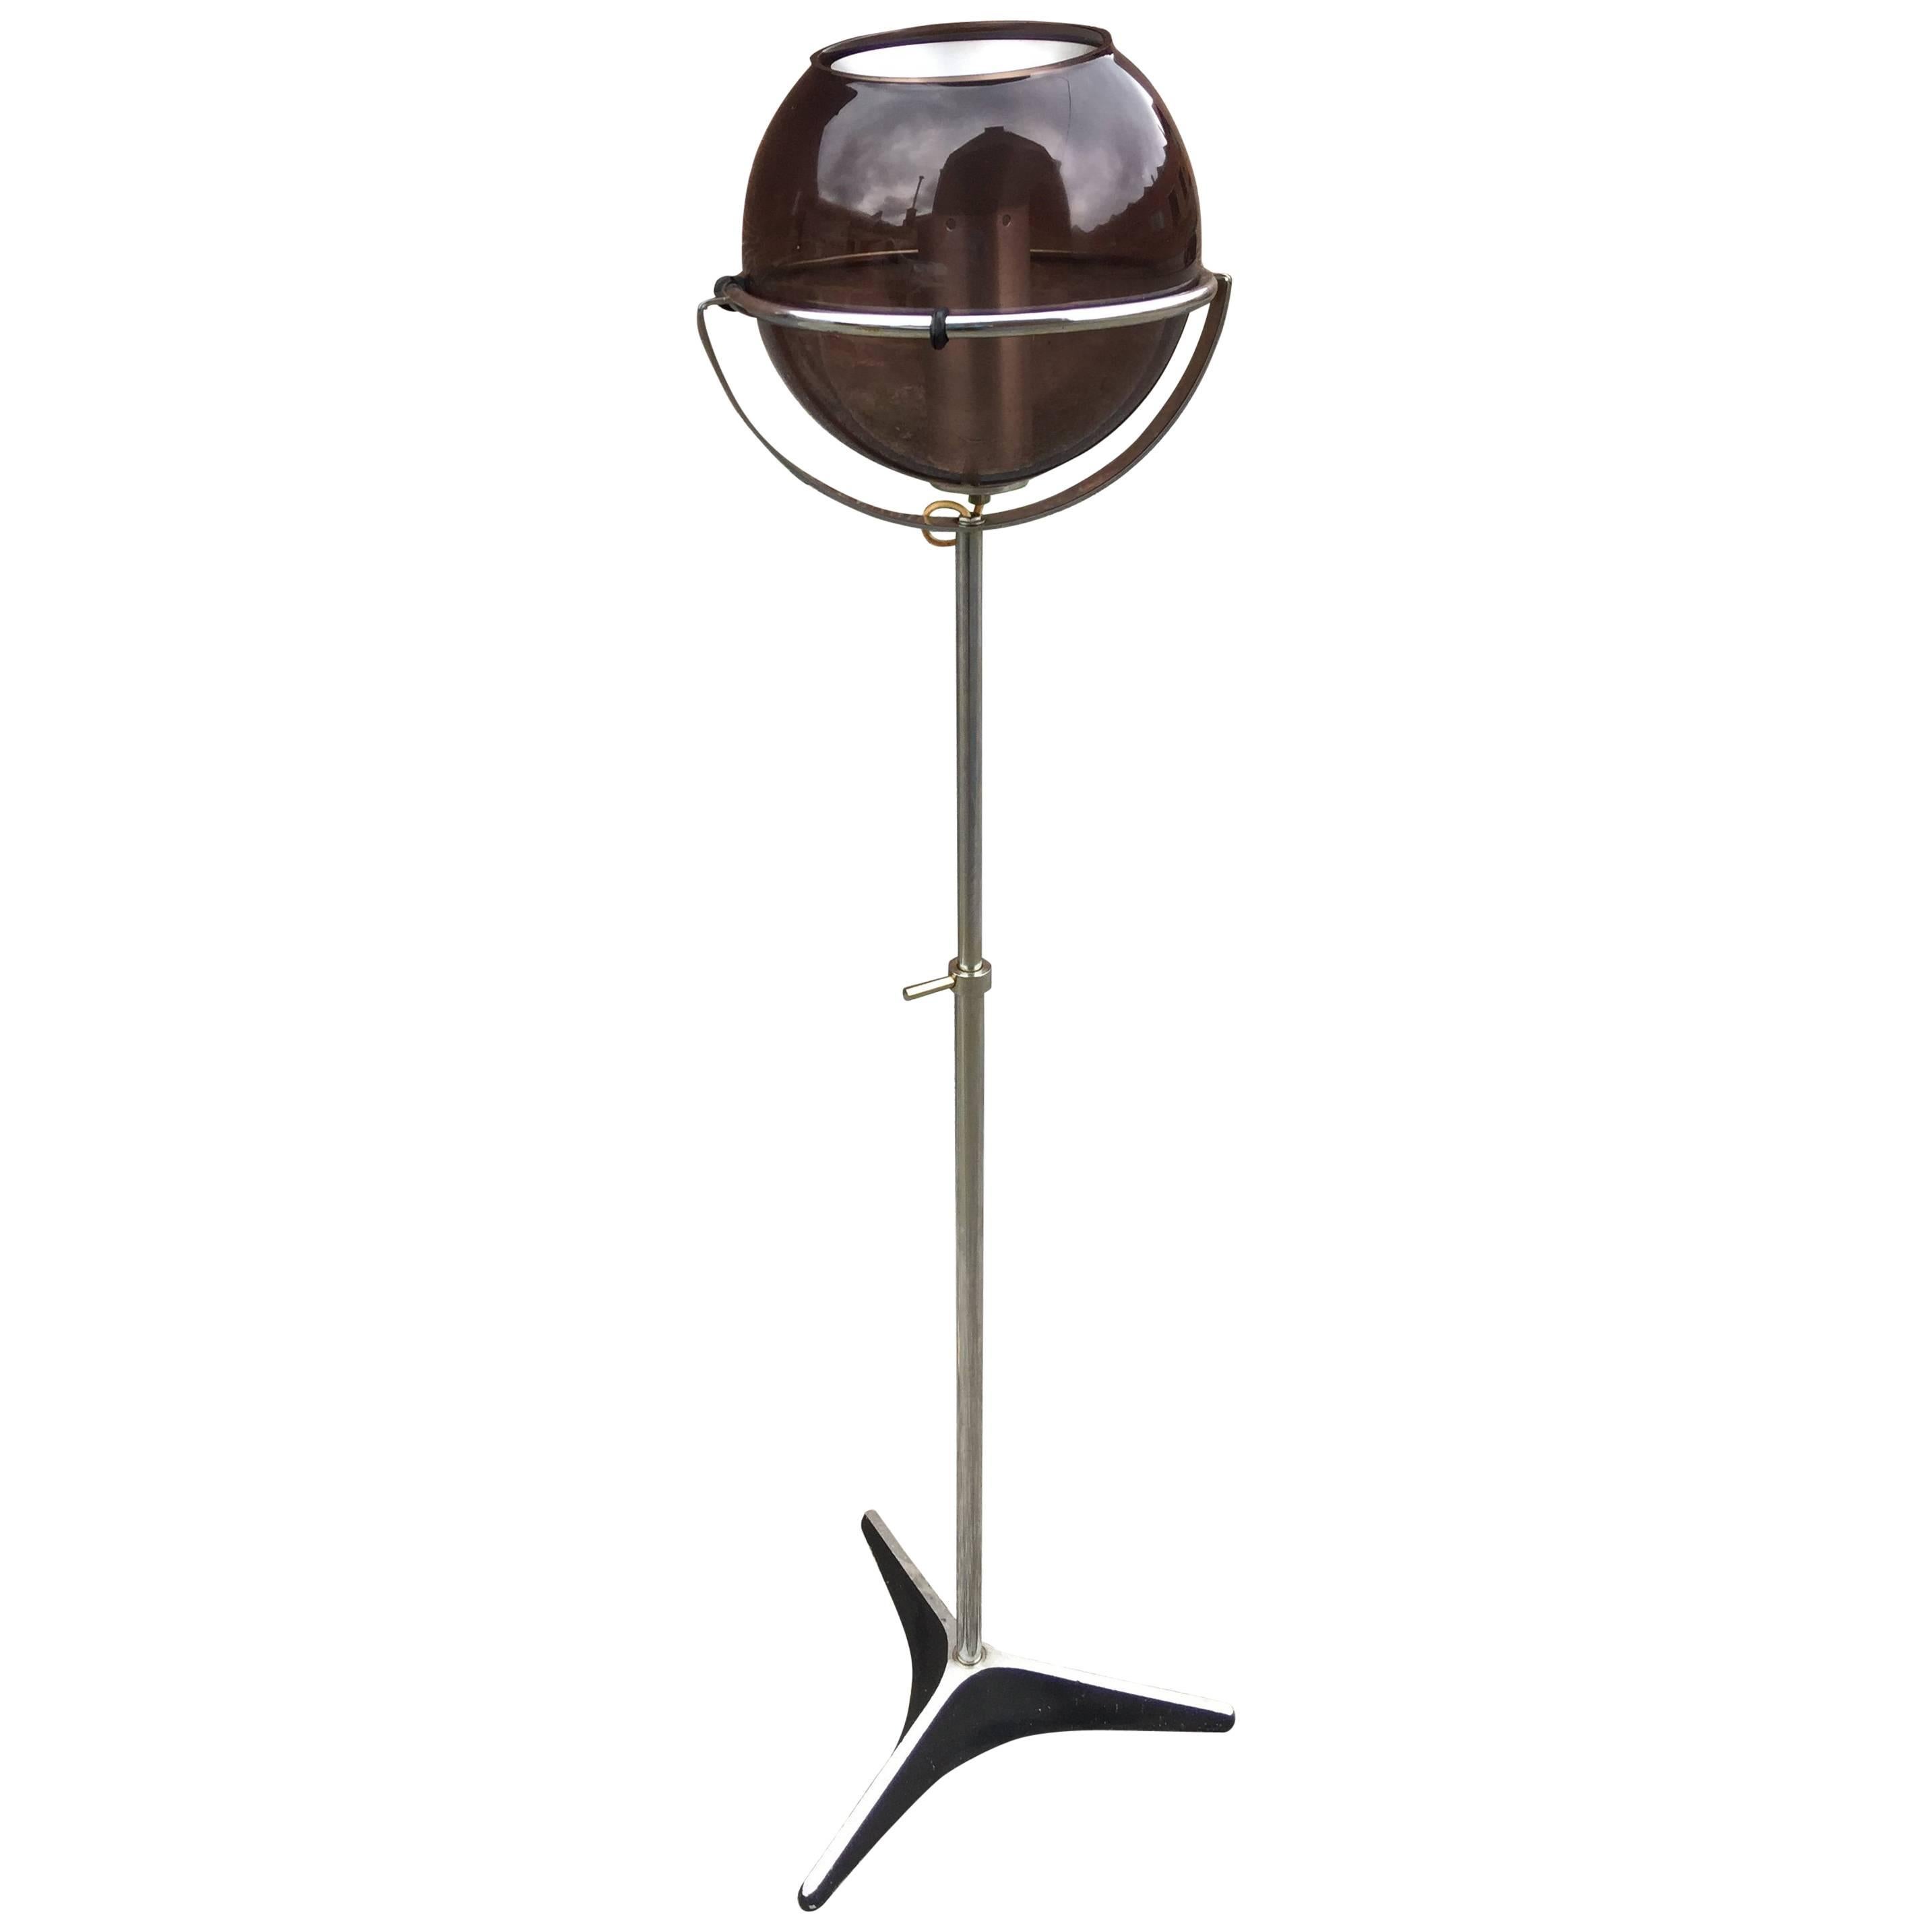 Frank Ligtelijn for RAAK, Floor Lamp with Adjustable Globe, 1960s